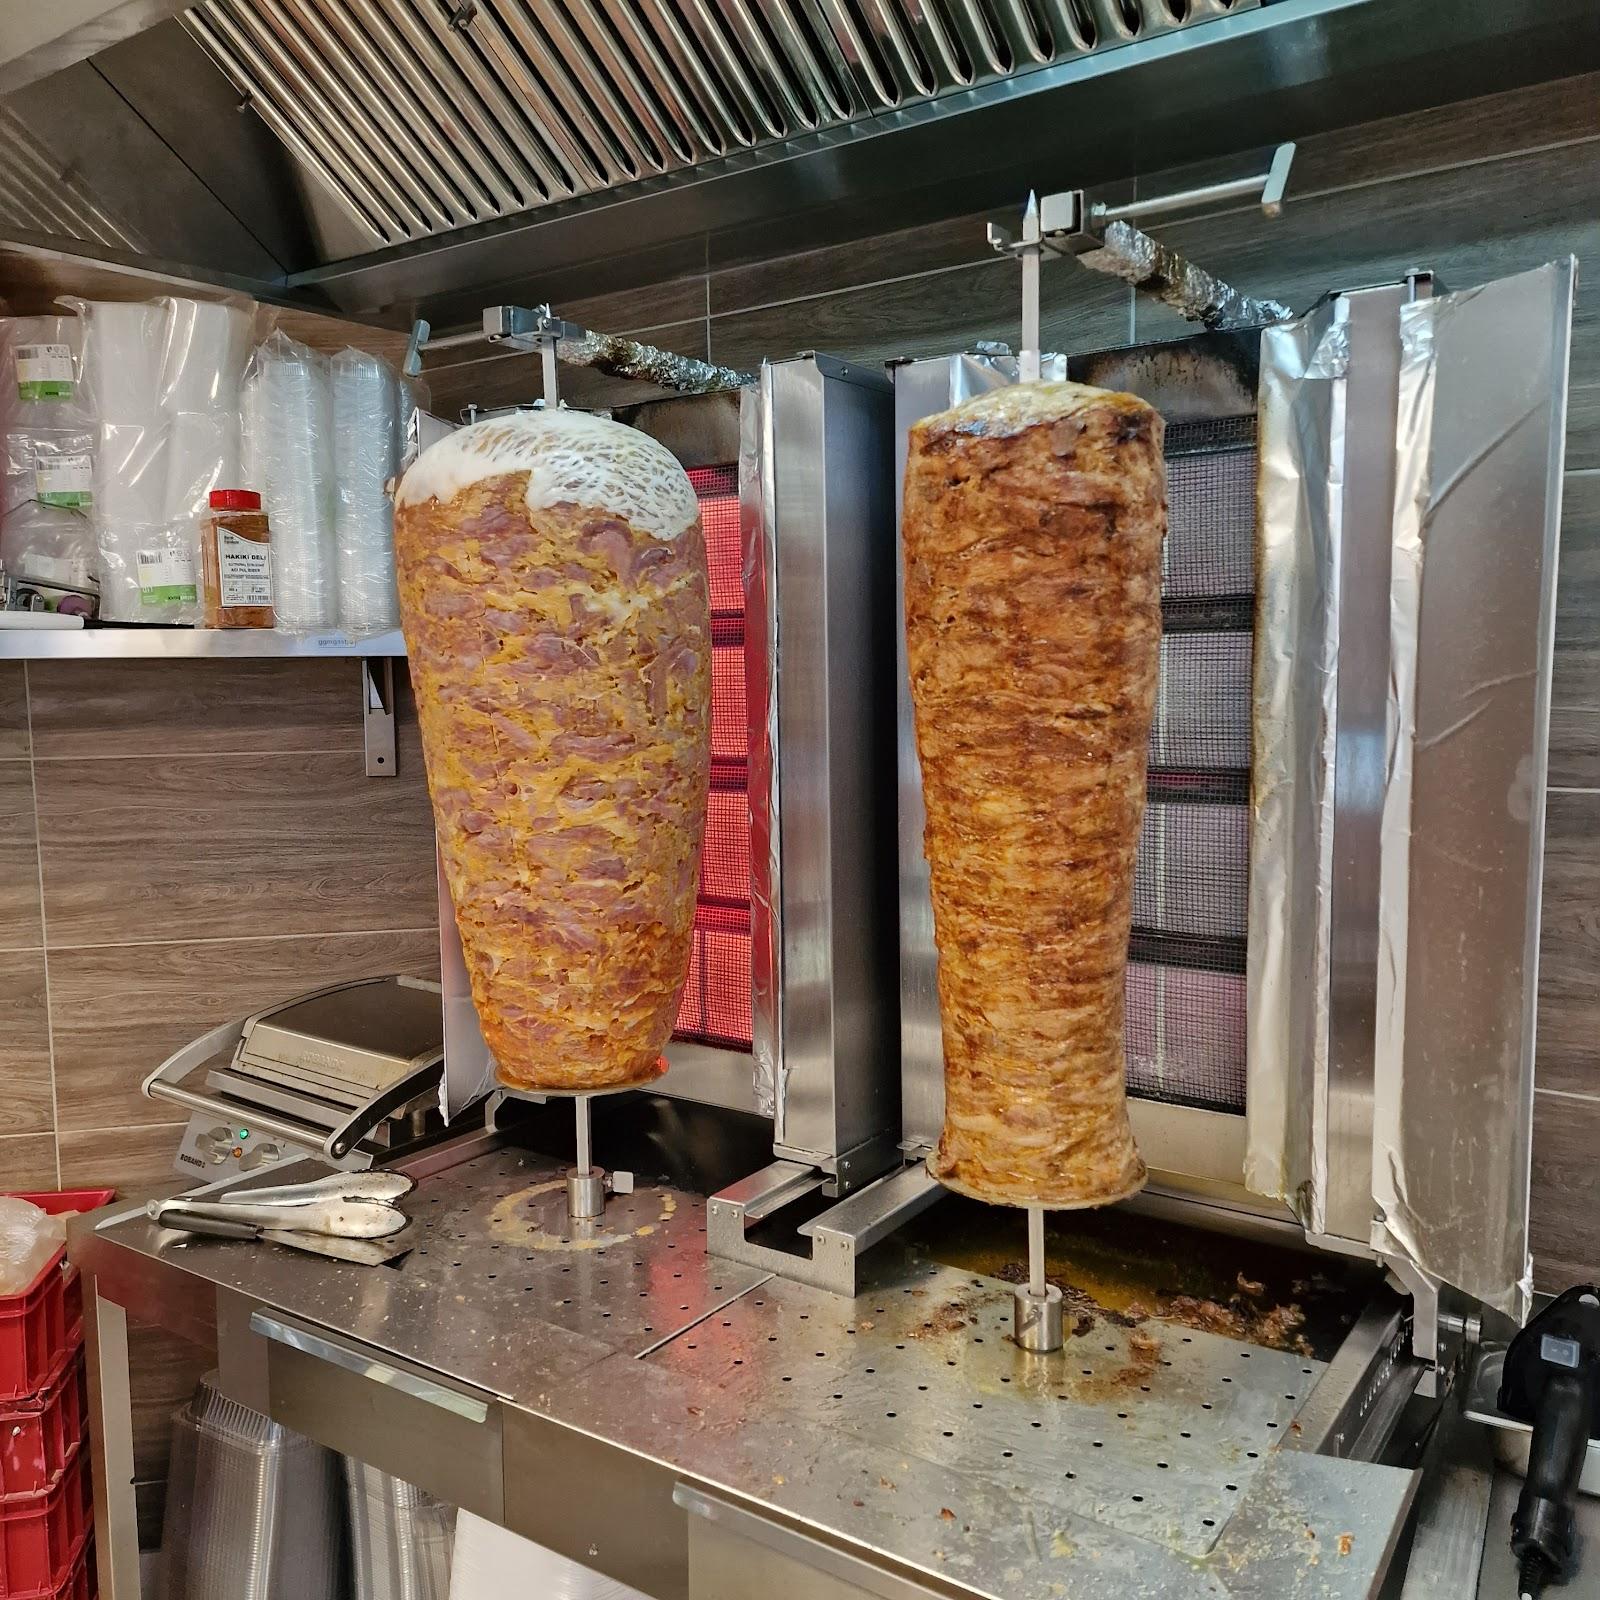 Restaurant "Ottoman Döner Kebab" in Waldkraiburg